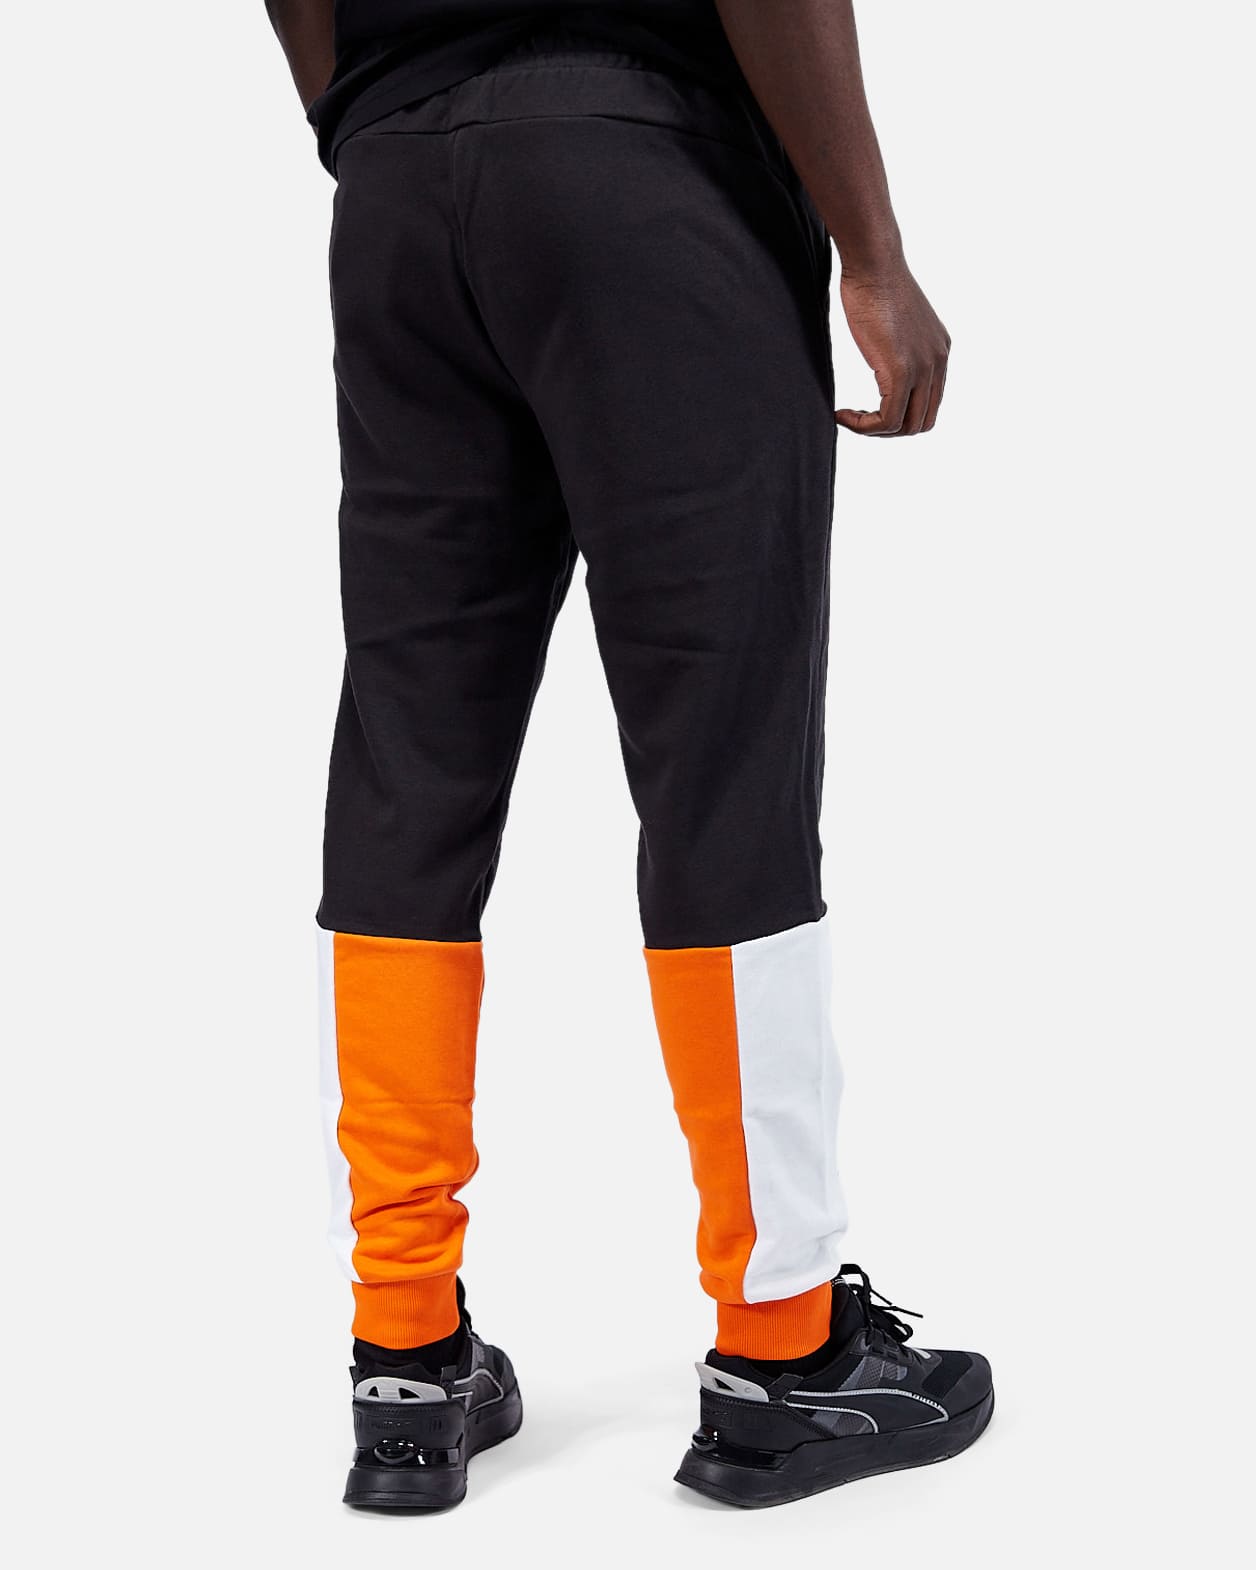 Pantalon Puma Power - Orange/Blanc/Noir